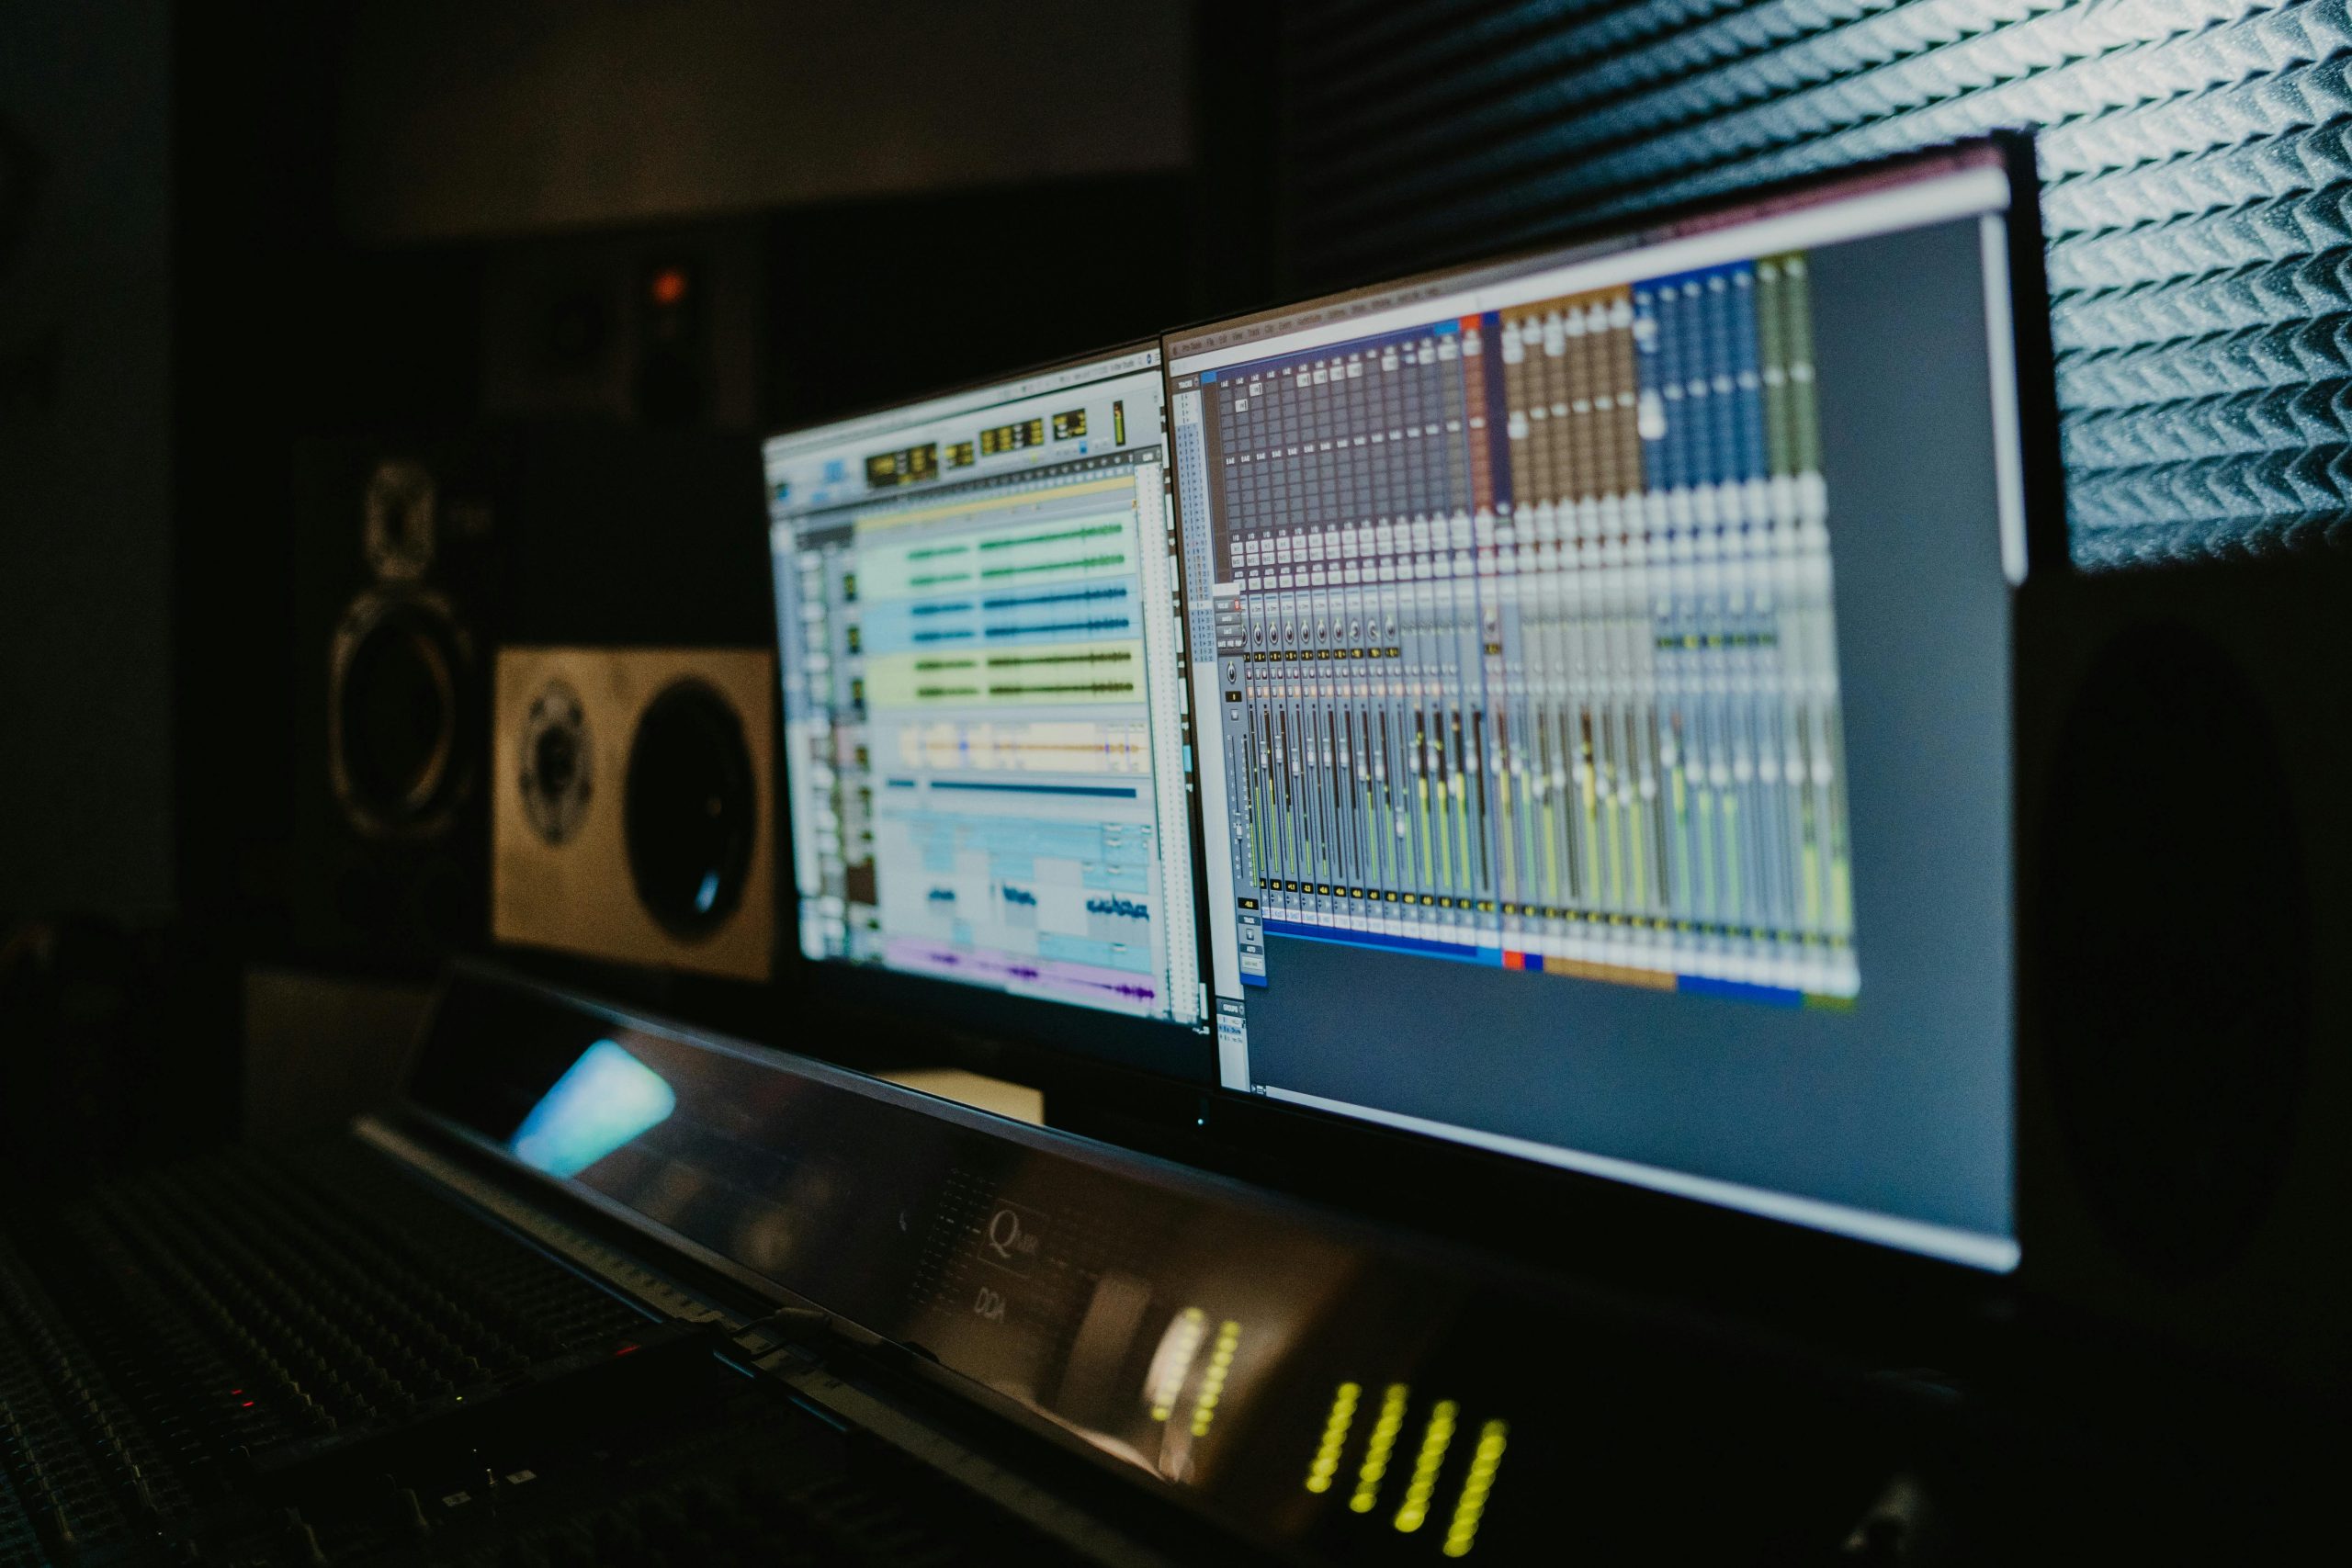 Build a recording studio